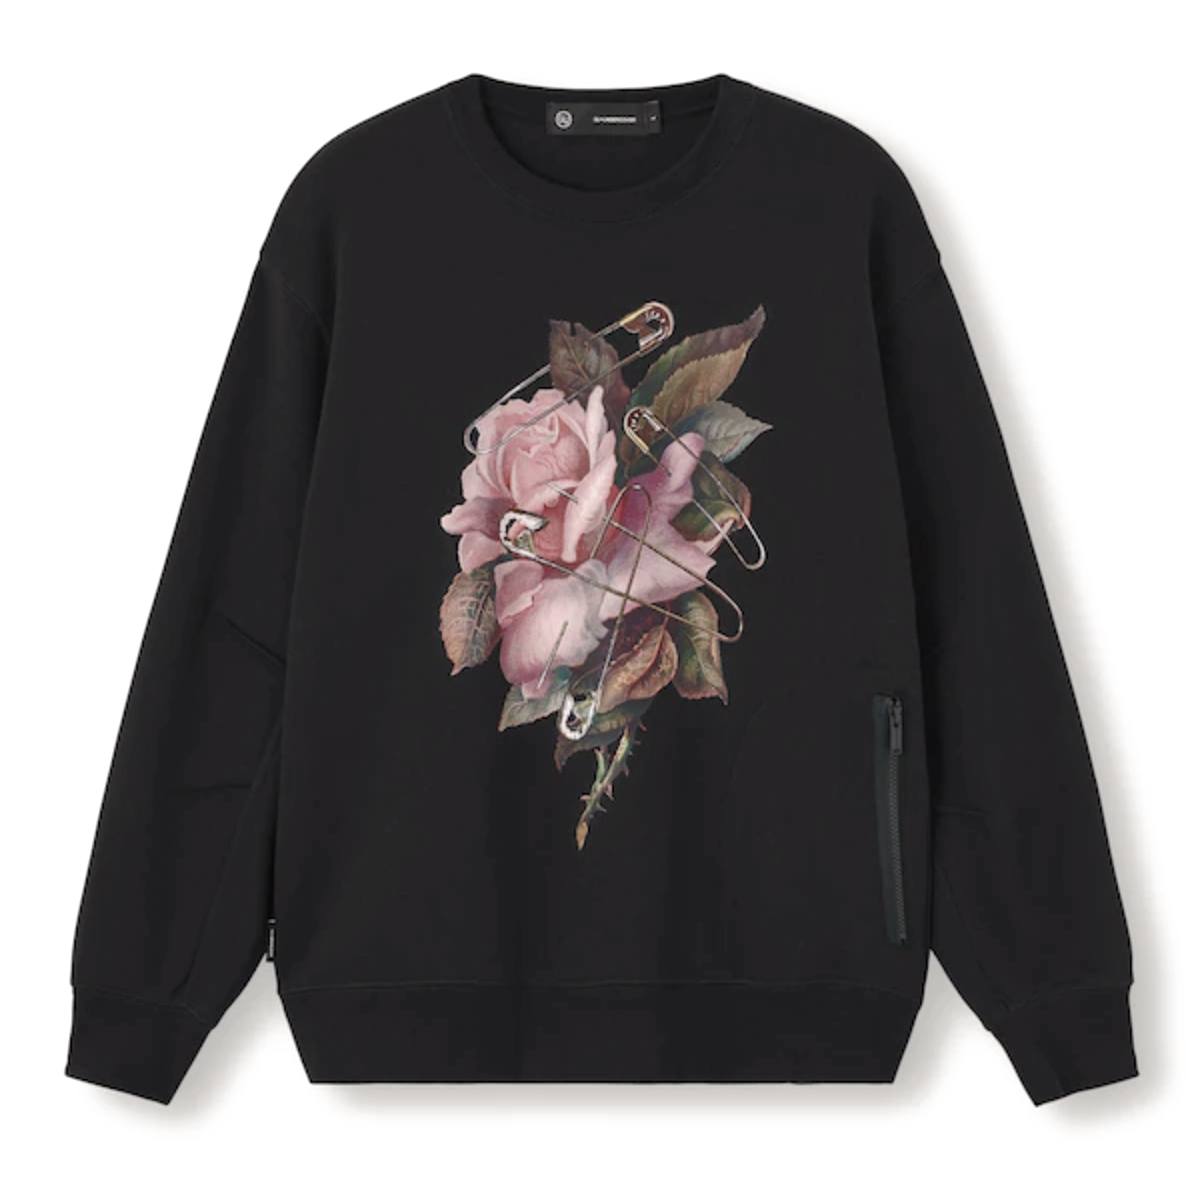 Uniqlo GU x Undercover Flower Graphic Sweatshirt Black